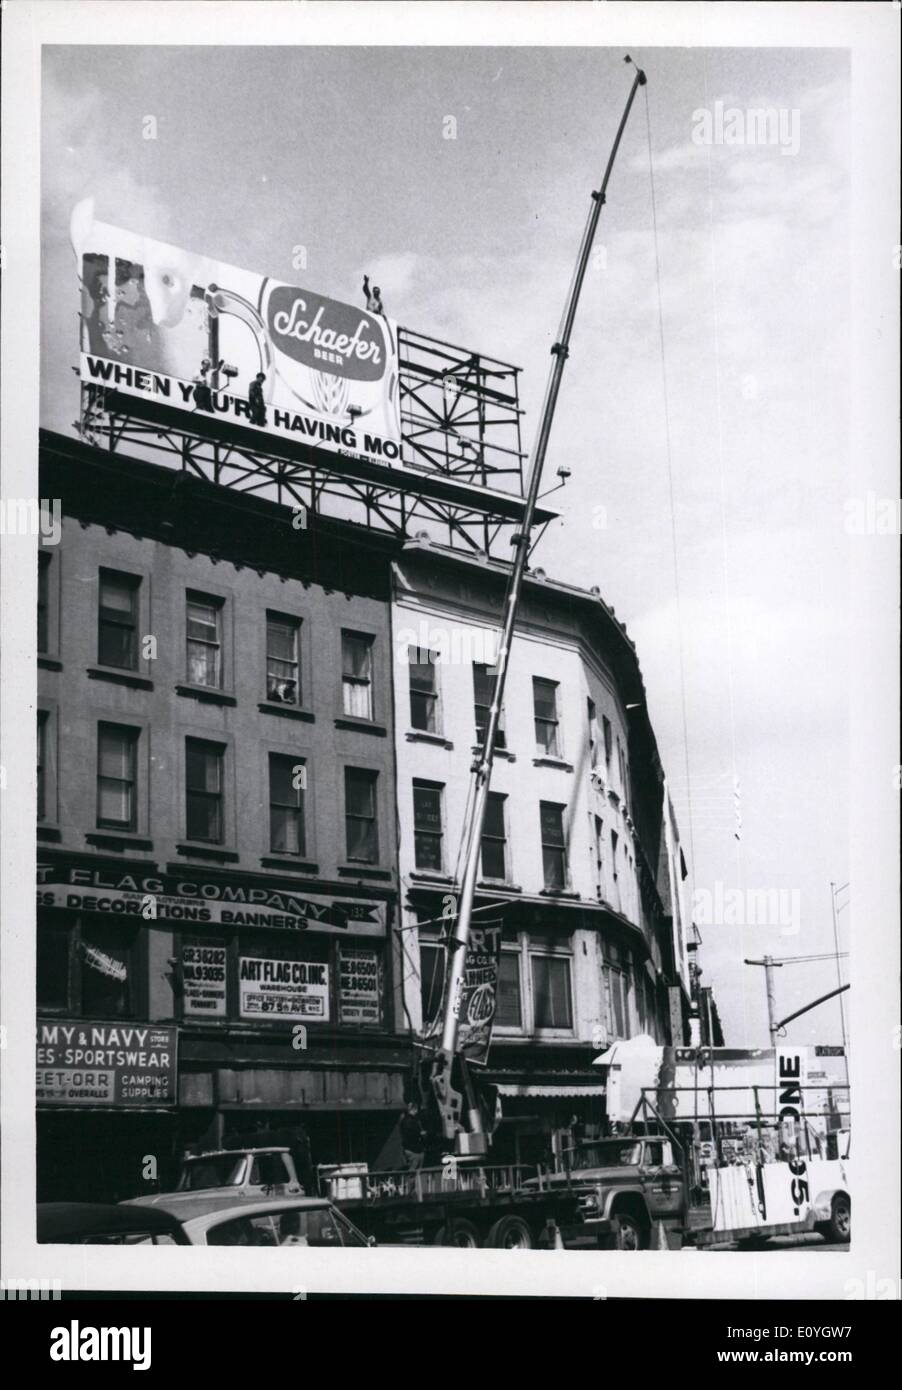 Mai 05, 1970 - La mise en place d'un signe de la bière Schaefer à ilatbresh et influents Avenues de Brooklyn Banque D'Images